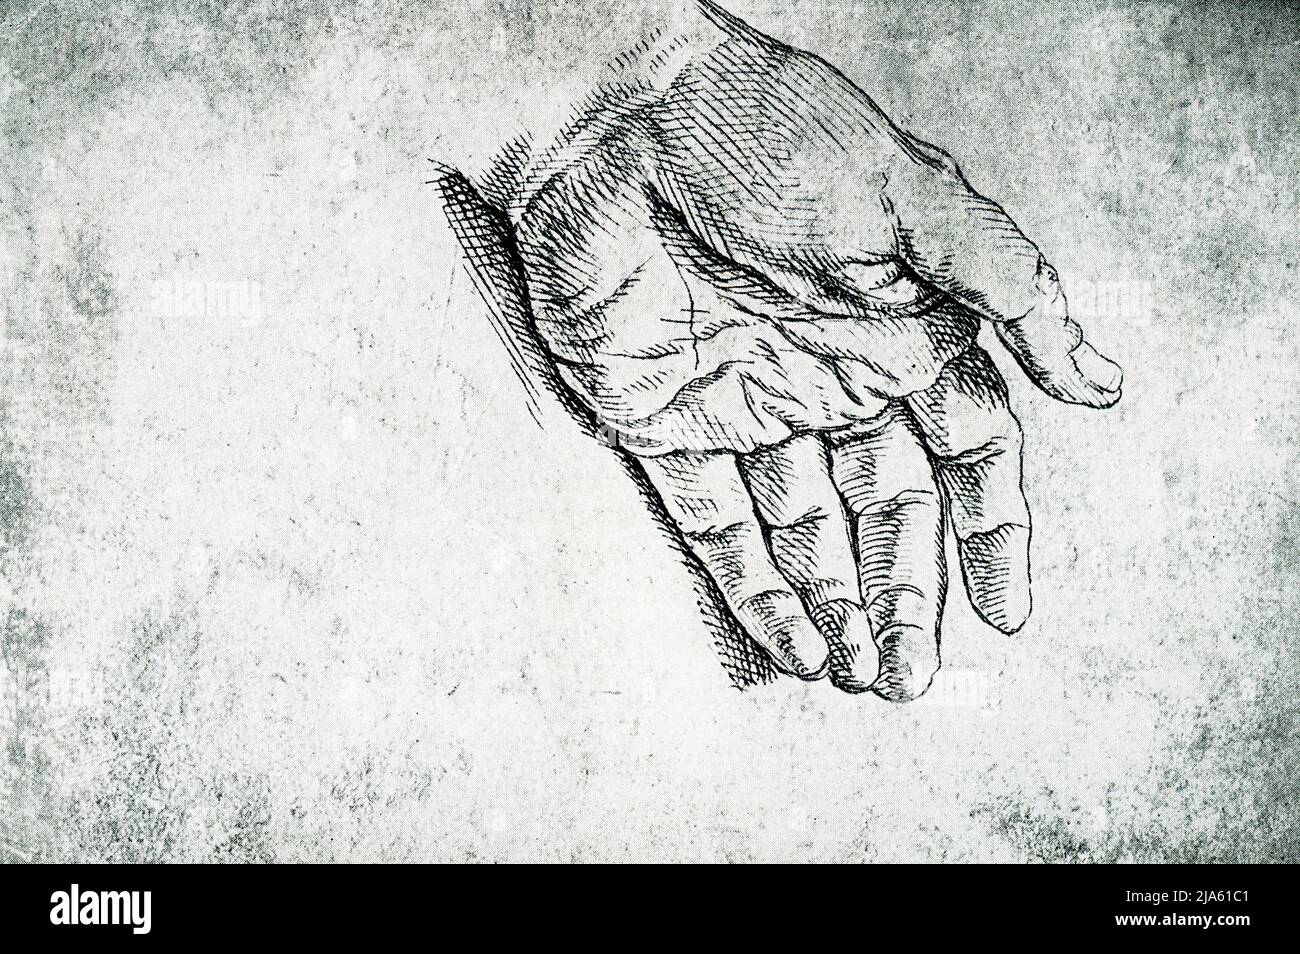 Questo disegno di una mano è di Raffaello (1483-1520). Il morbido cuscino del palmo e le punte appuntite del dito sembrano dare un senso di delicatezza piuttosto che di forza. Raffaello Sanzio da Urbino fu pittore e architetto italiano dell'Alto Rinascimento. Il suo lavoro è ammirato per la sua chiarezza di forma, la facilità di composizione, e la realizzazione visiva dell'ideale neoplatonico della grandezza umana Foto Stock